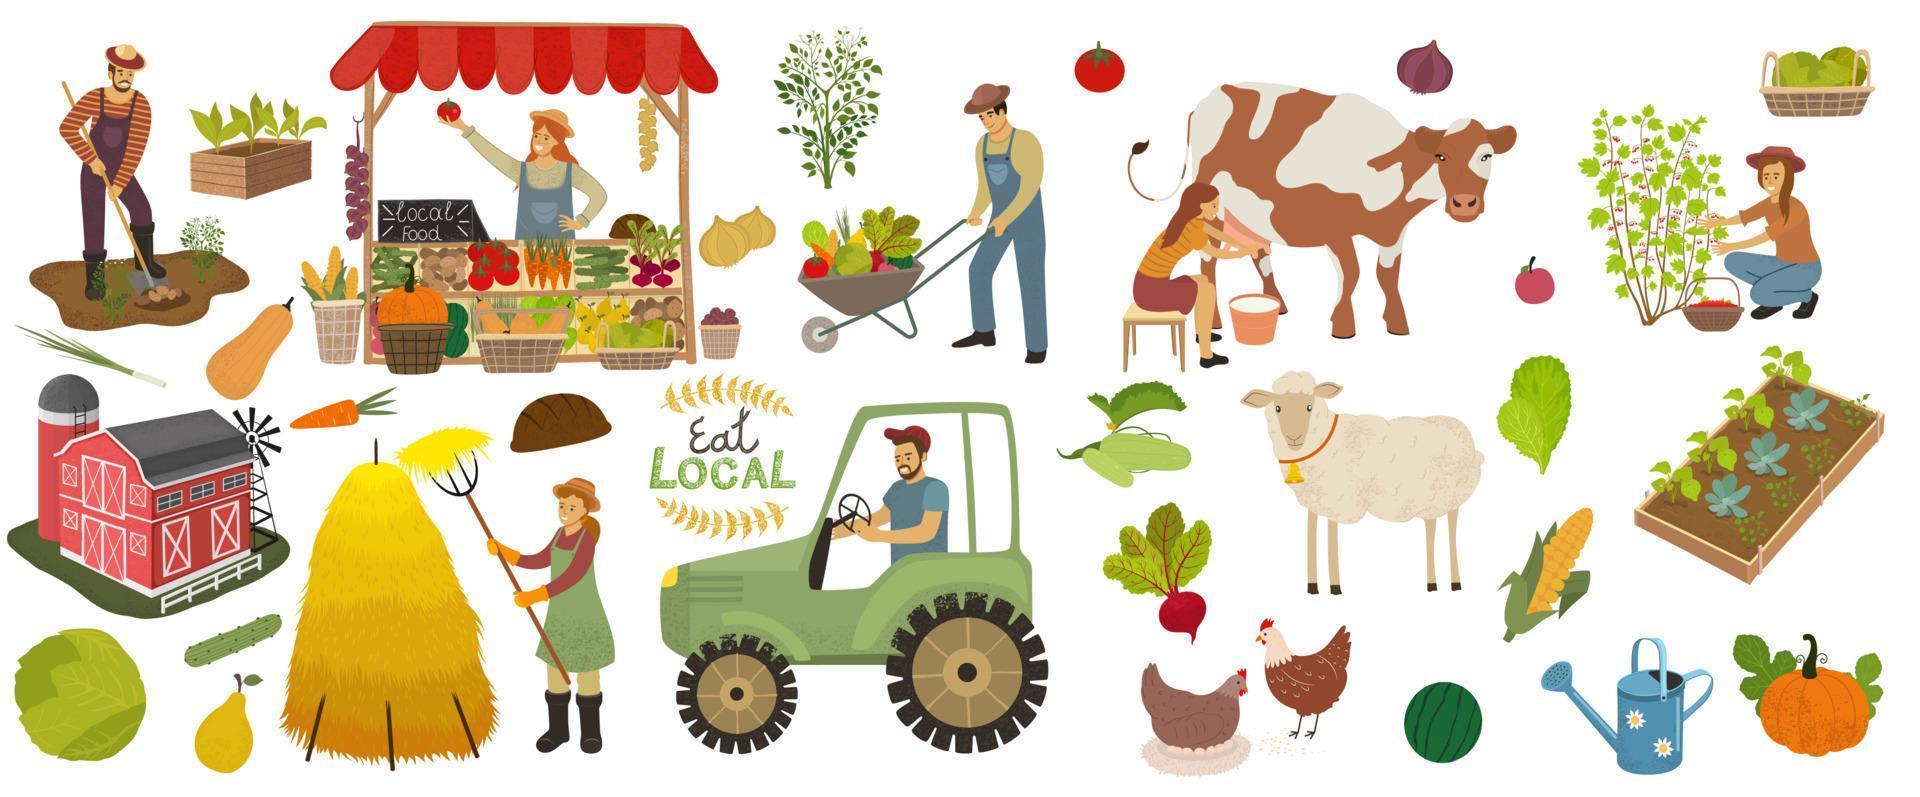 lokaal biologisch productie pictogrammen set. boeren Doen agrarisch werk, planten, bijeenkomst gewassen en verkopen voedsel. vrouw melk een koe en plukken bessen. boerderij dieren, fruit en groenten geïsoleerd vector